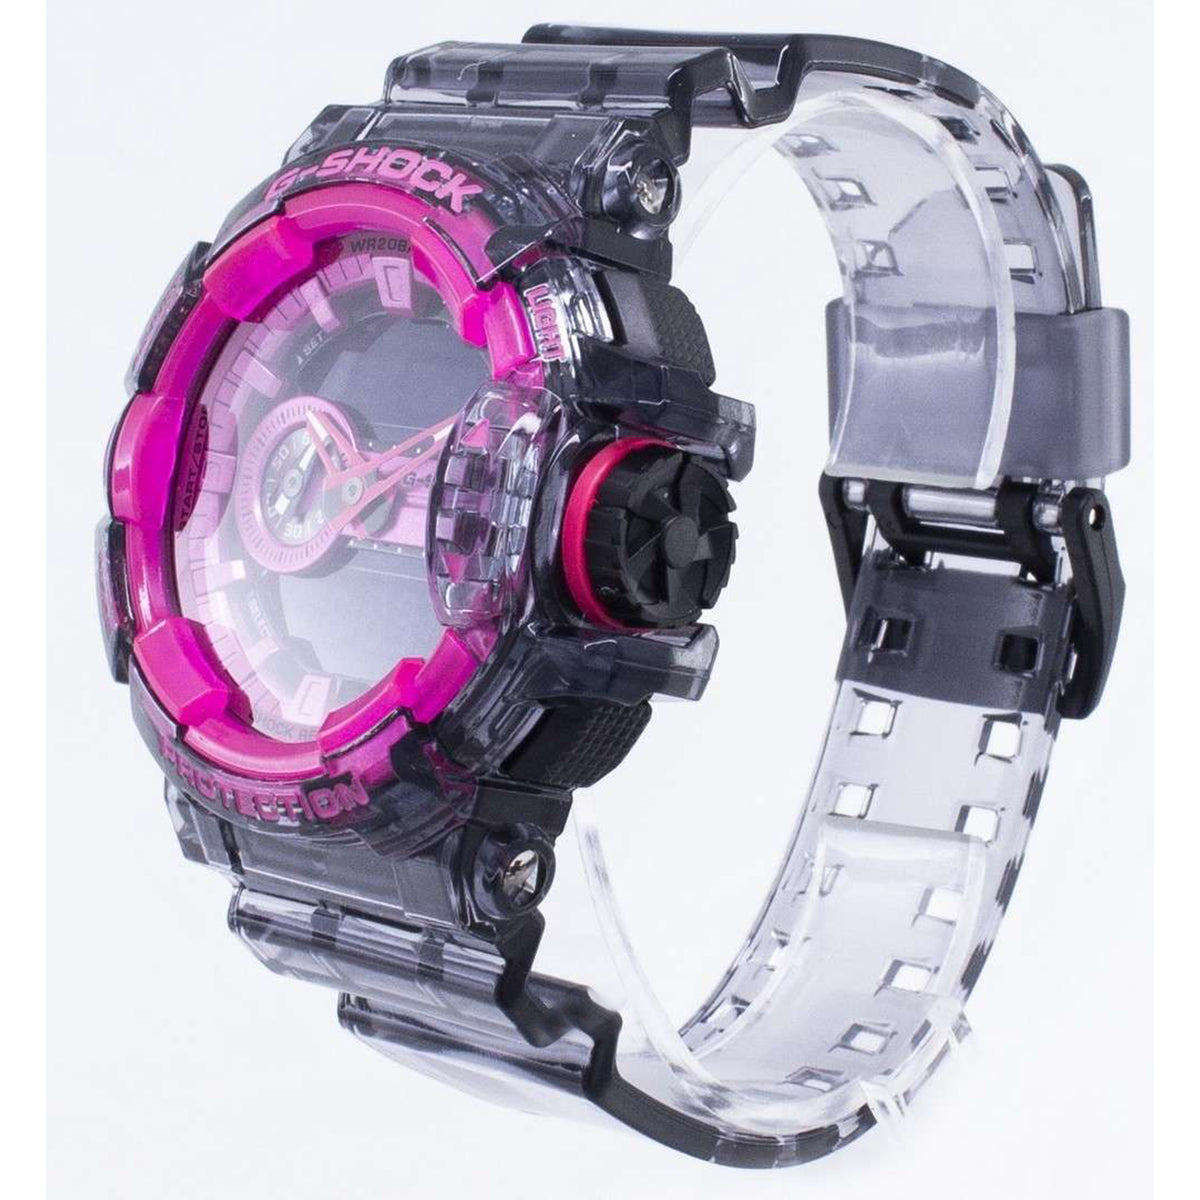 Casio - G-Shock - GA-400SK-1A4DR - egywatch.com